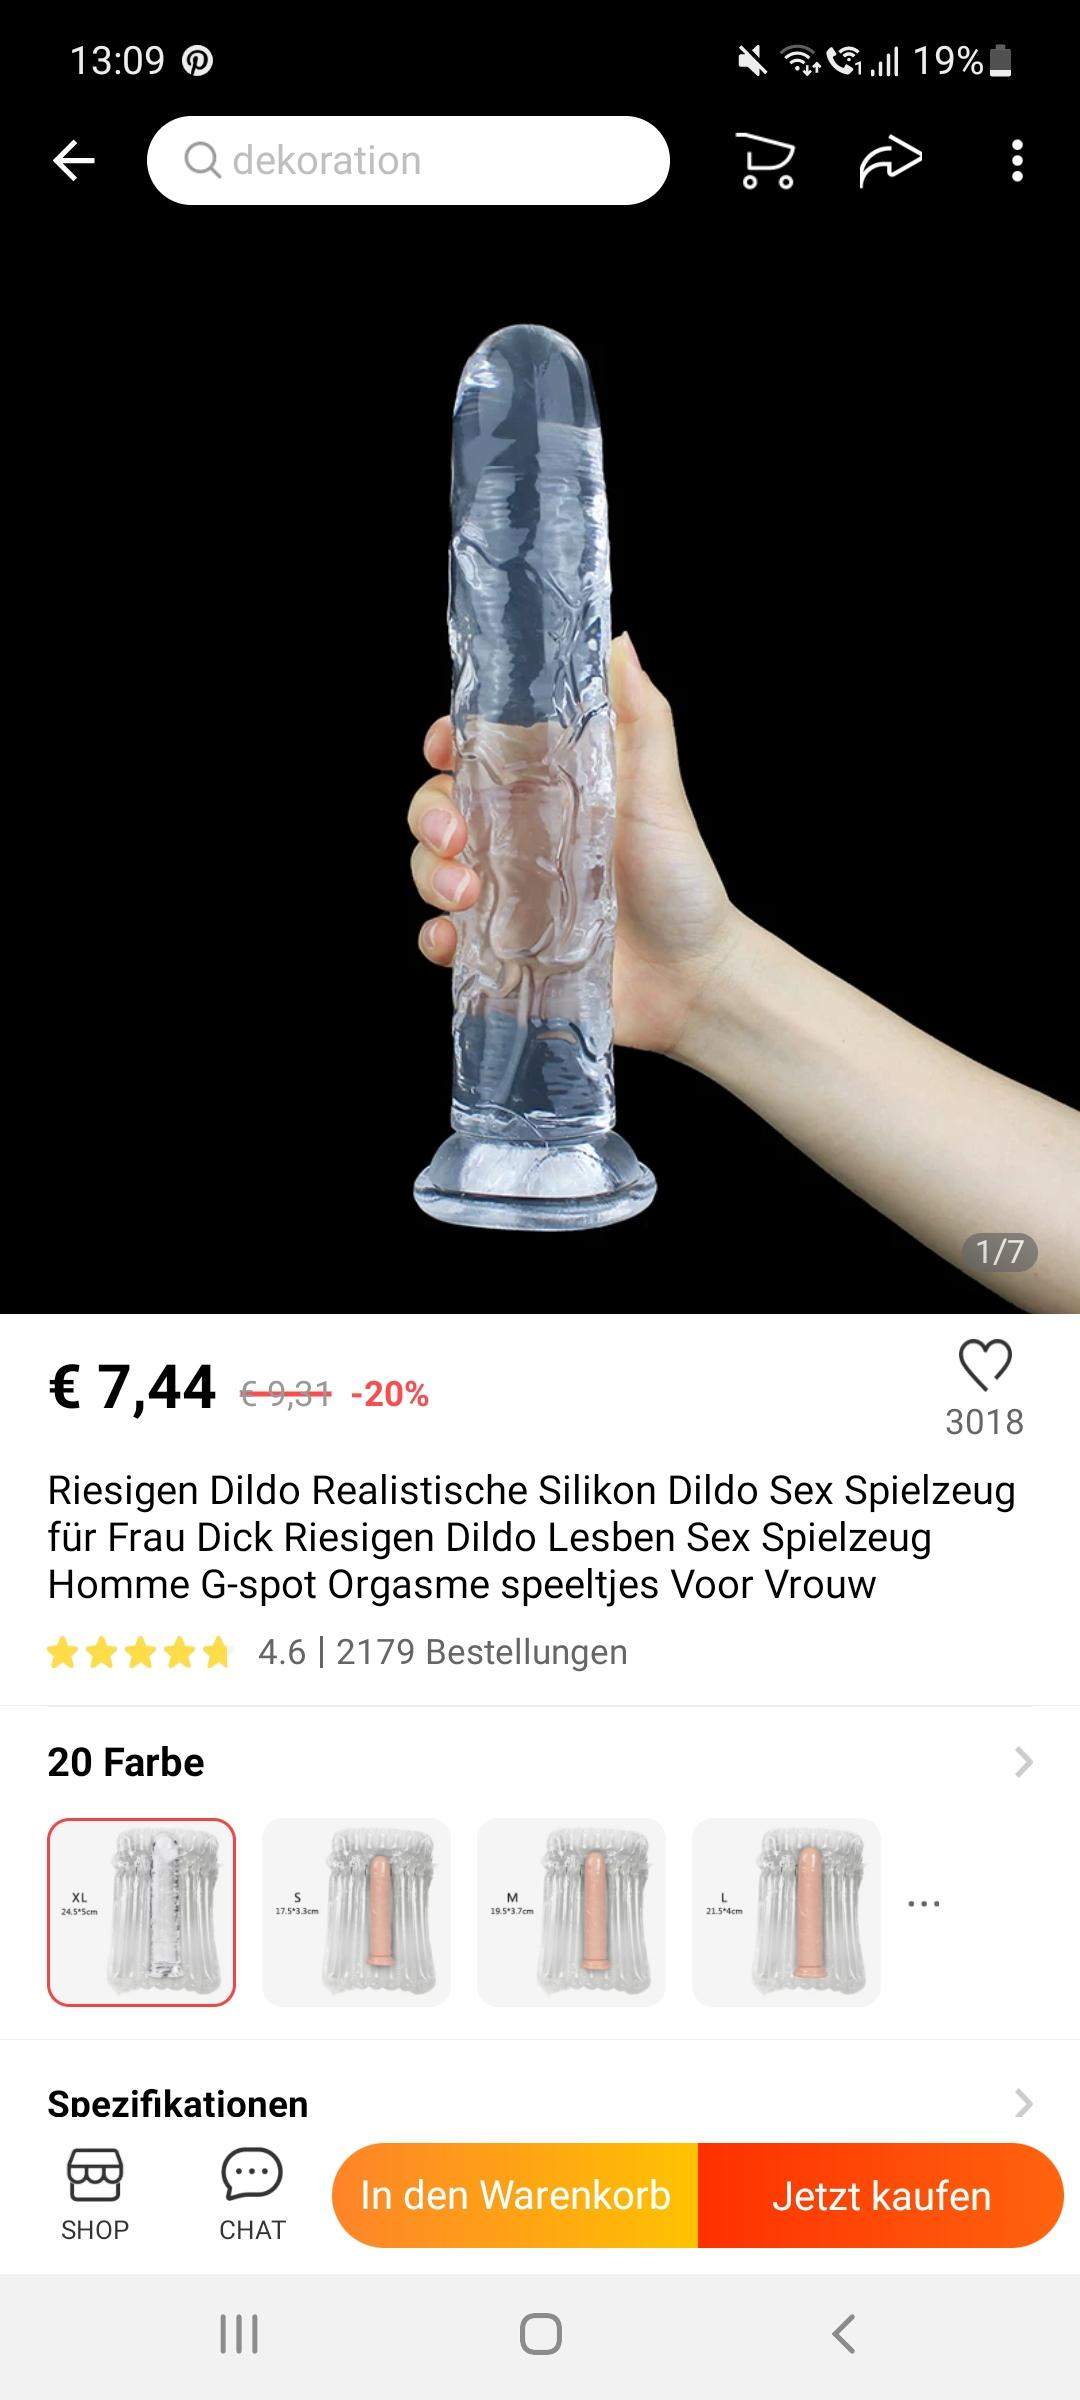 Wo kann man sich so einen dildo kaufen? (Sex, Frauen, Selbstbefriedigung) Bild